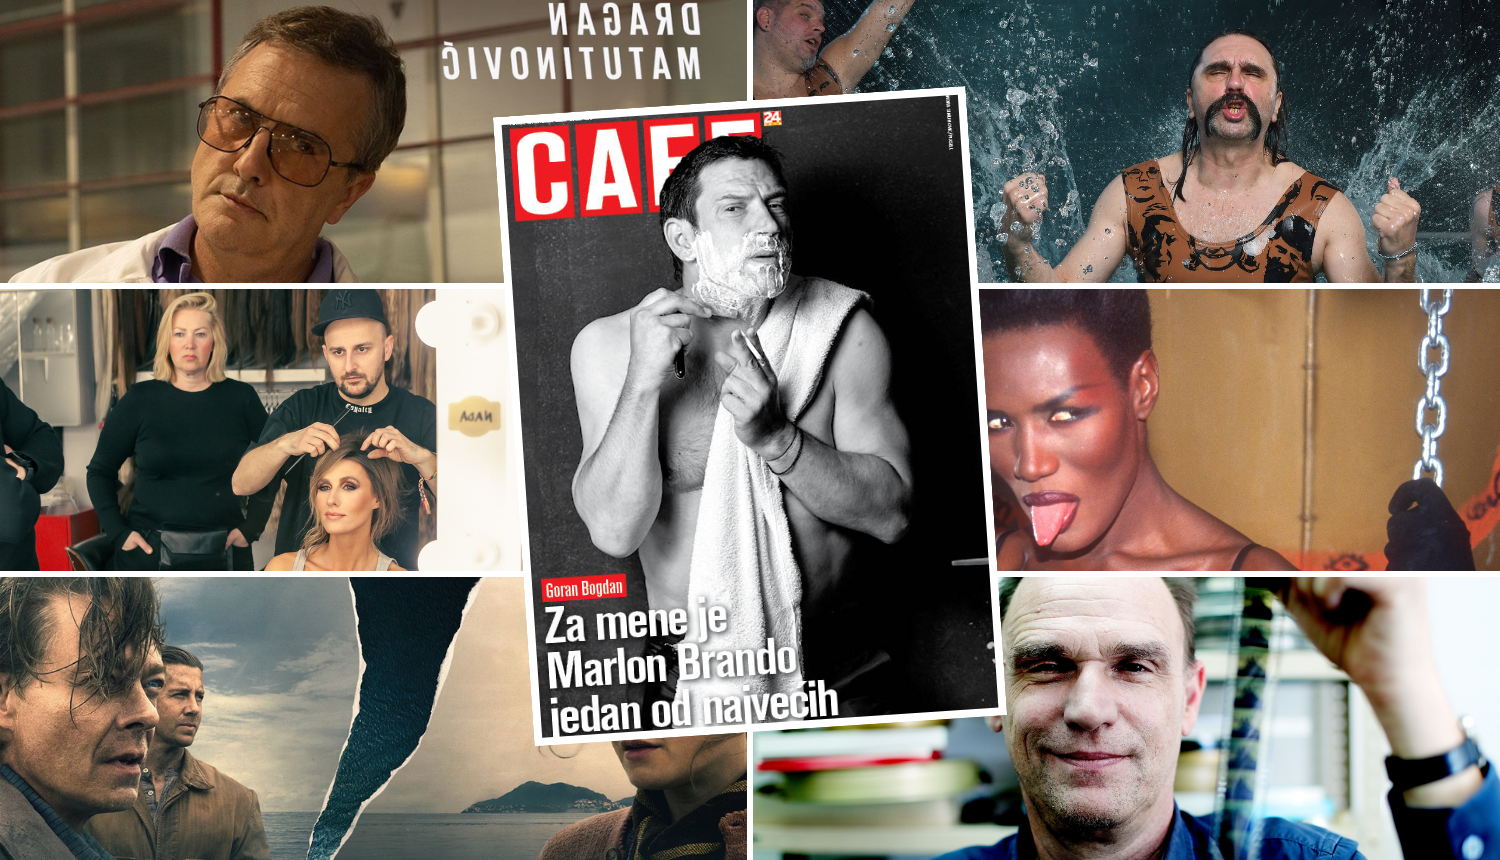 Glumac Goran Bogdan zvijezda je ovotjednog Cafea: Na jedan je dan postao Marlon Brando